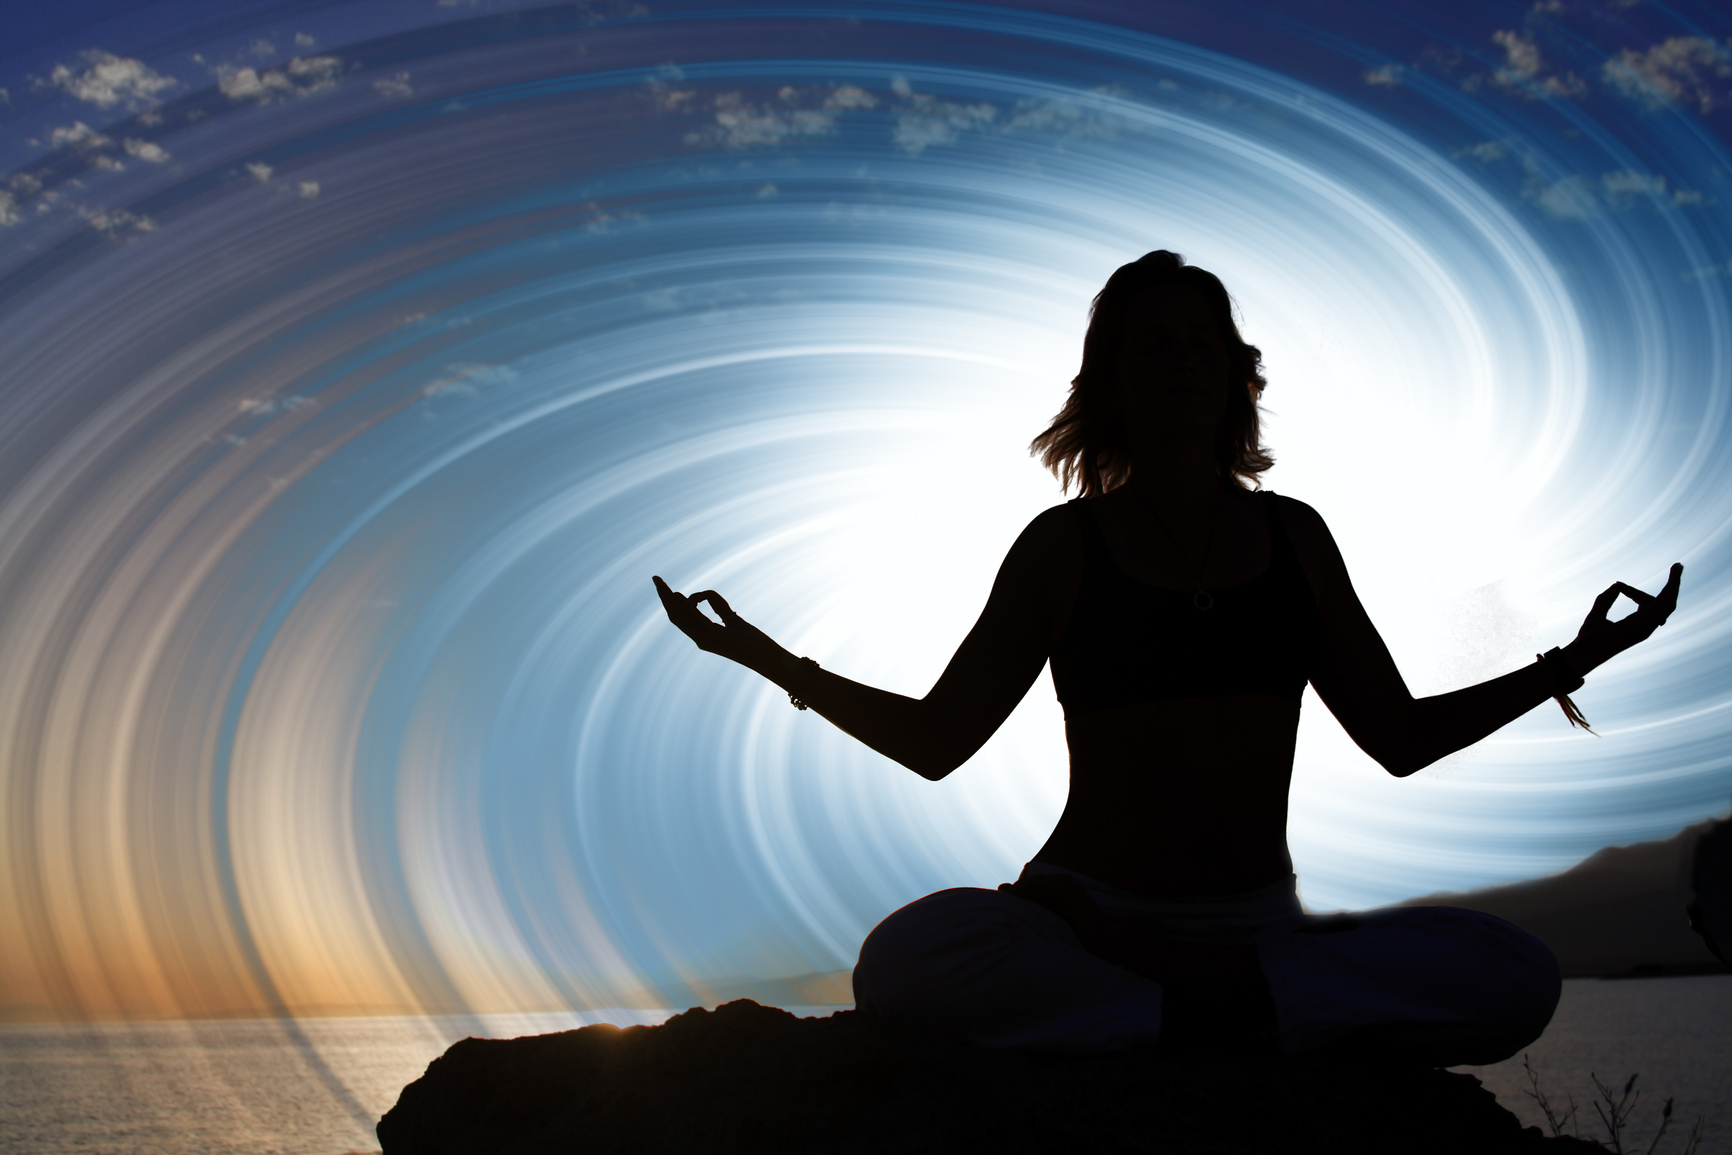 Meditation healing. Внутренняя Гармония и спокойствие. Медитация. Медитация осознанности. Состояние гармонии и спокойствия.